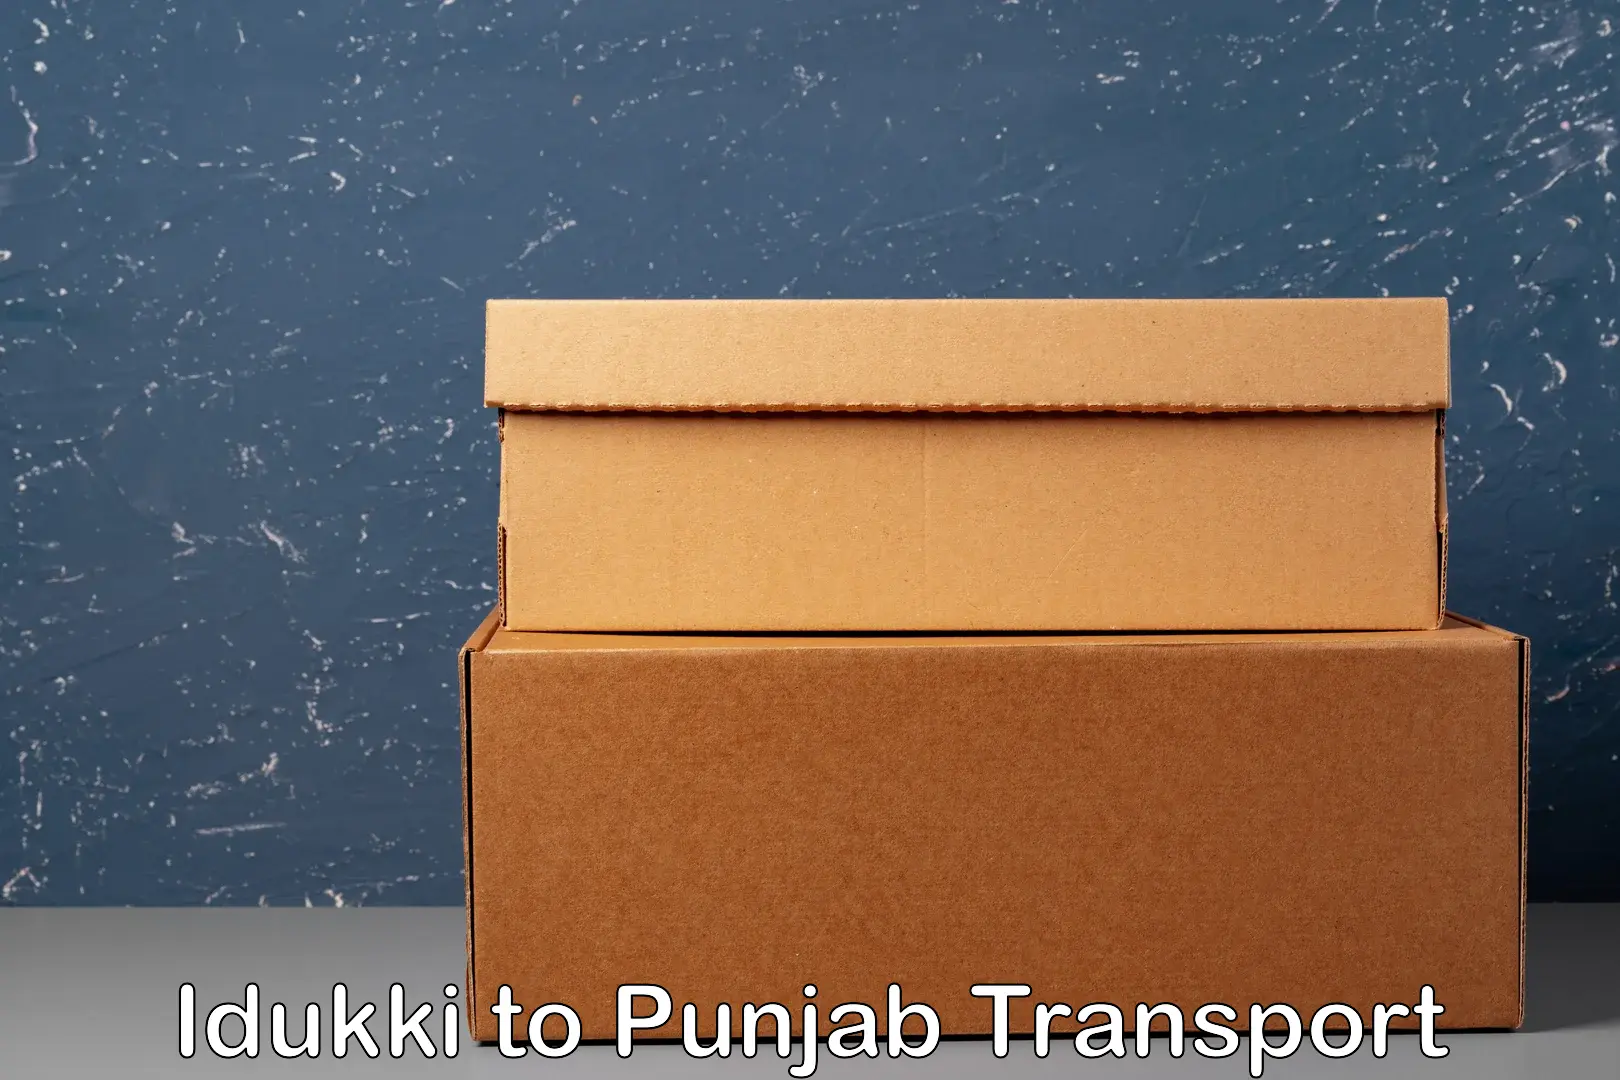 Air cargo transport services Idukki to Punjab